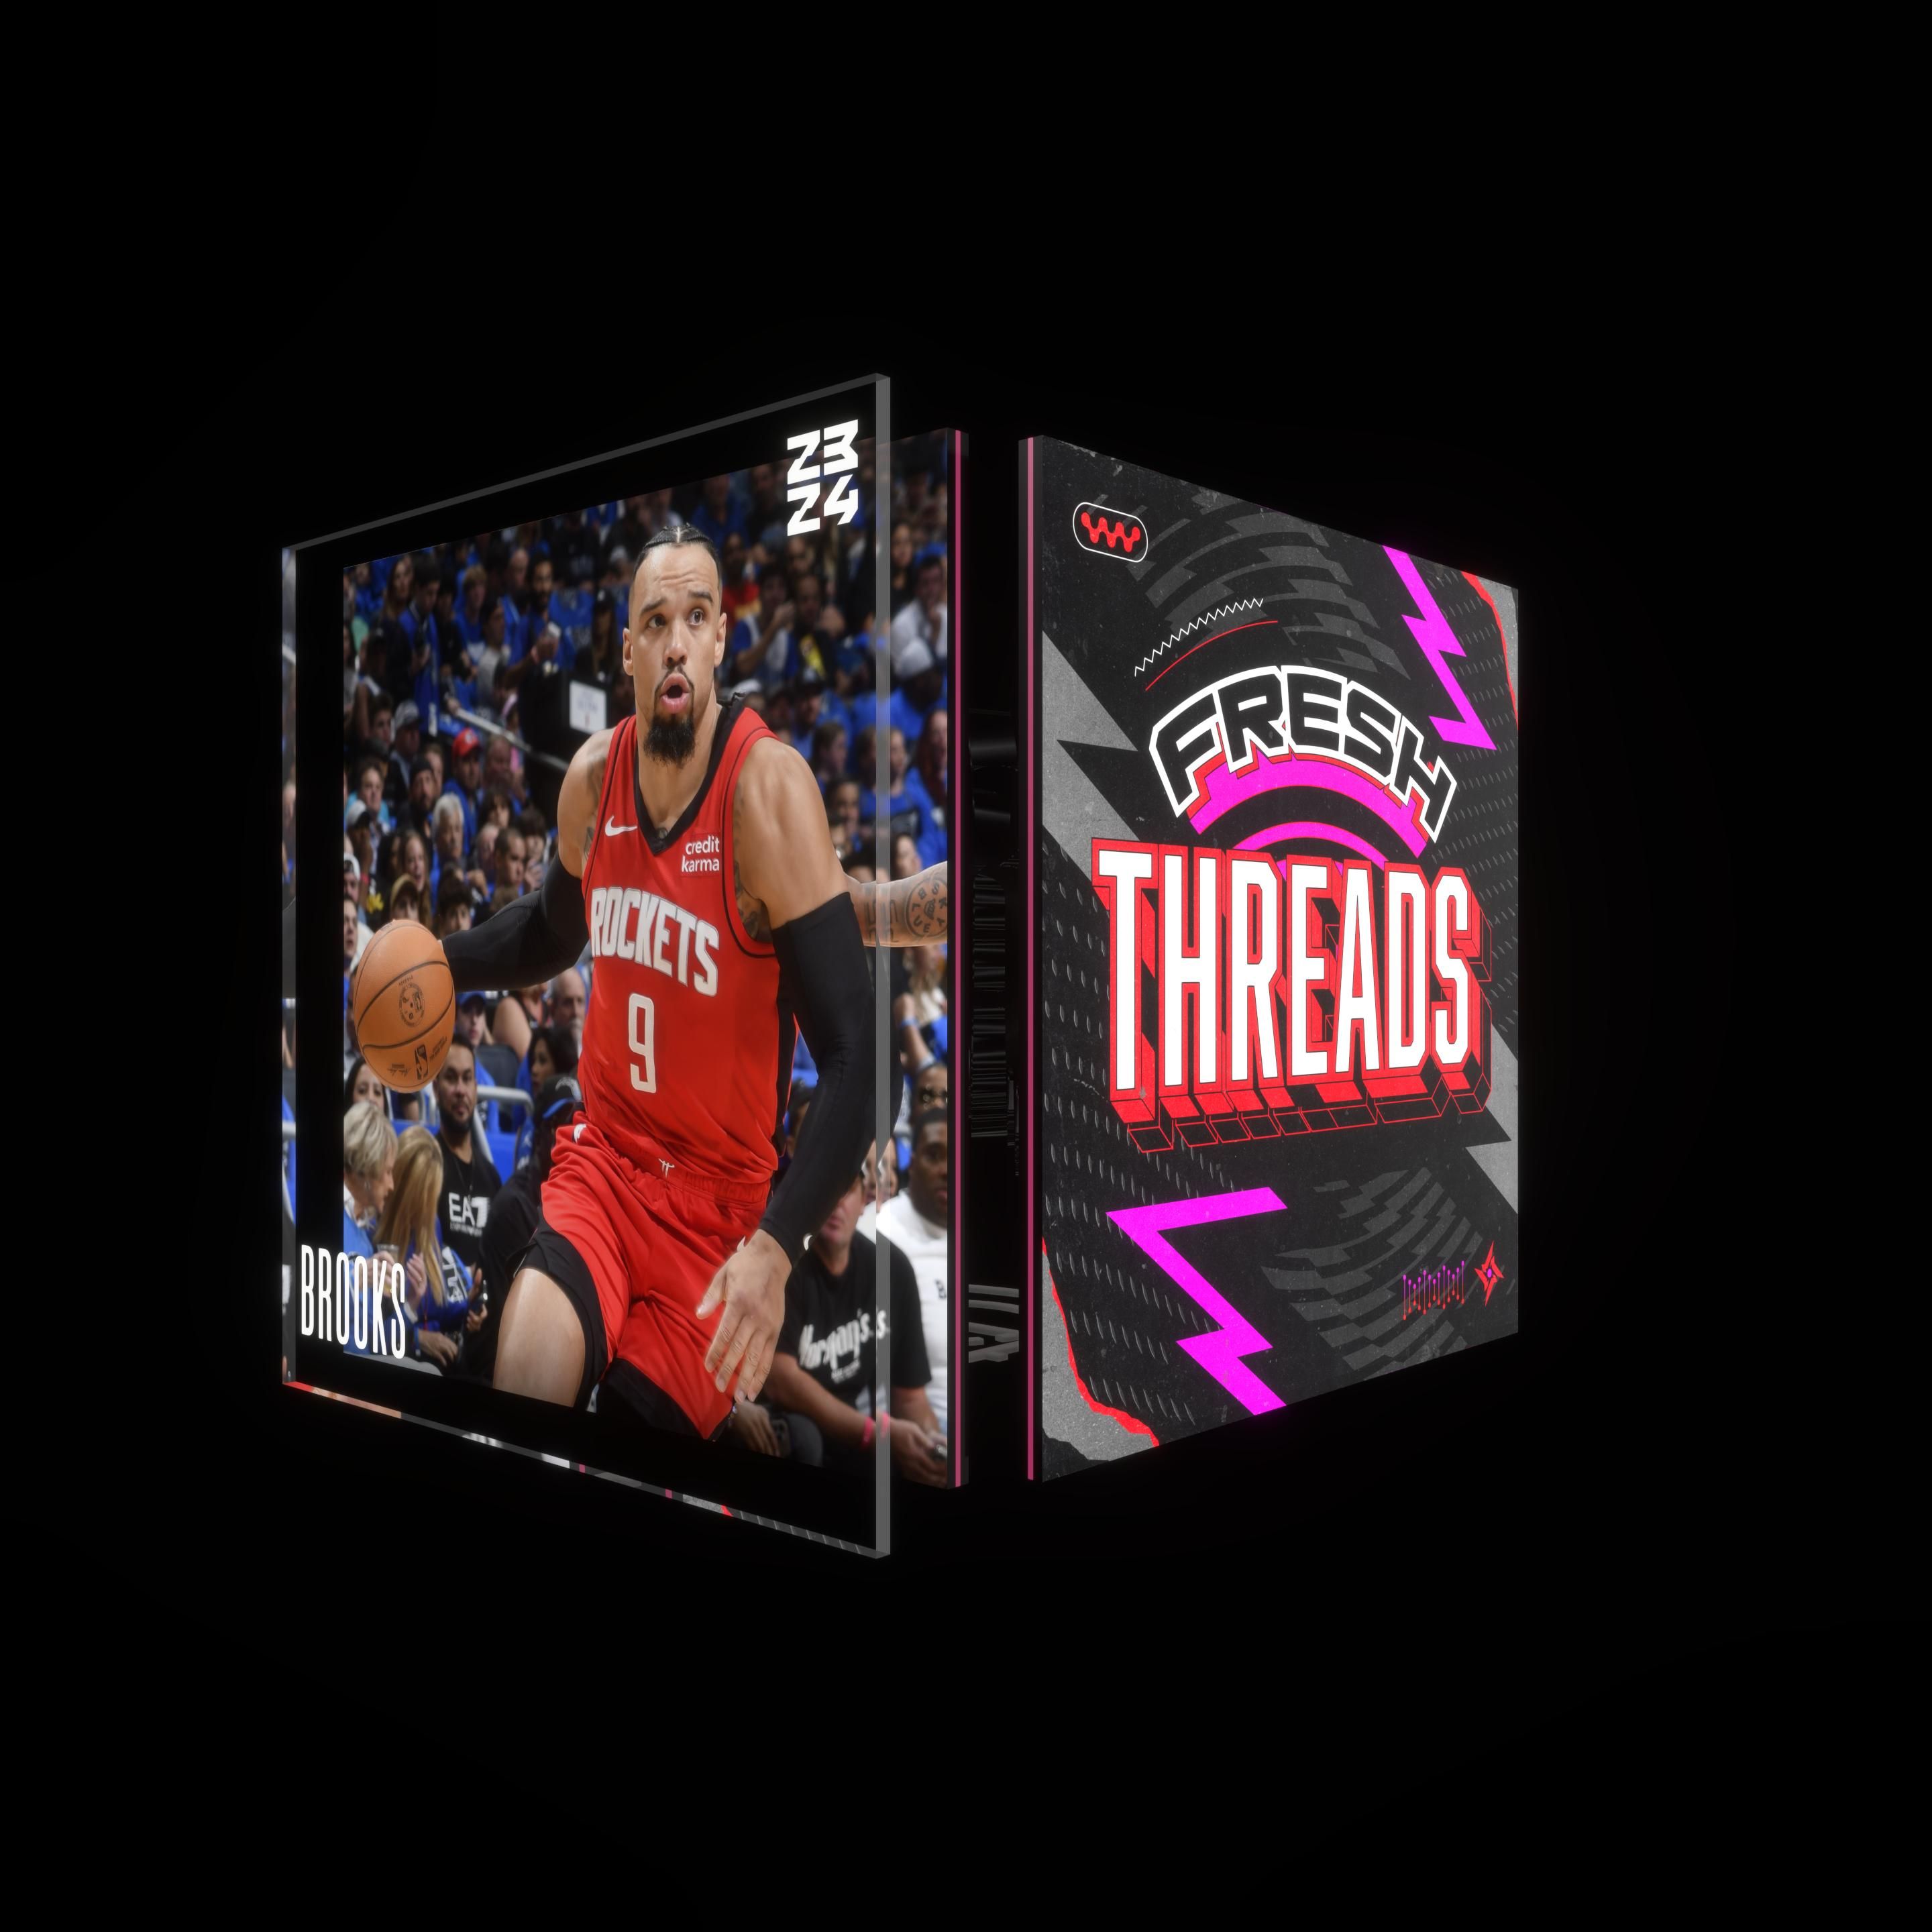 NBA Buzzer Beater Basketball Box